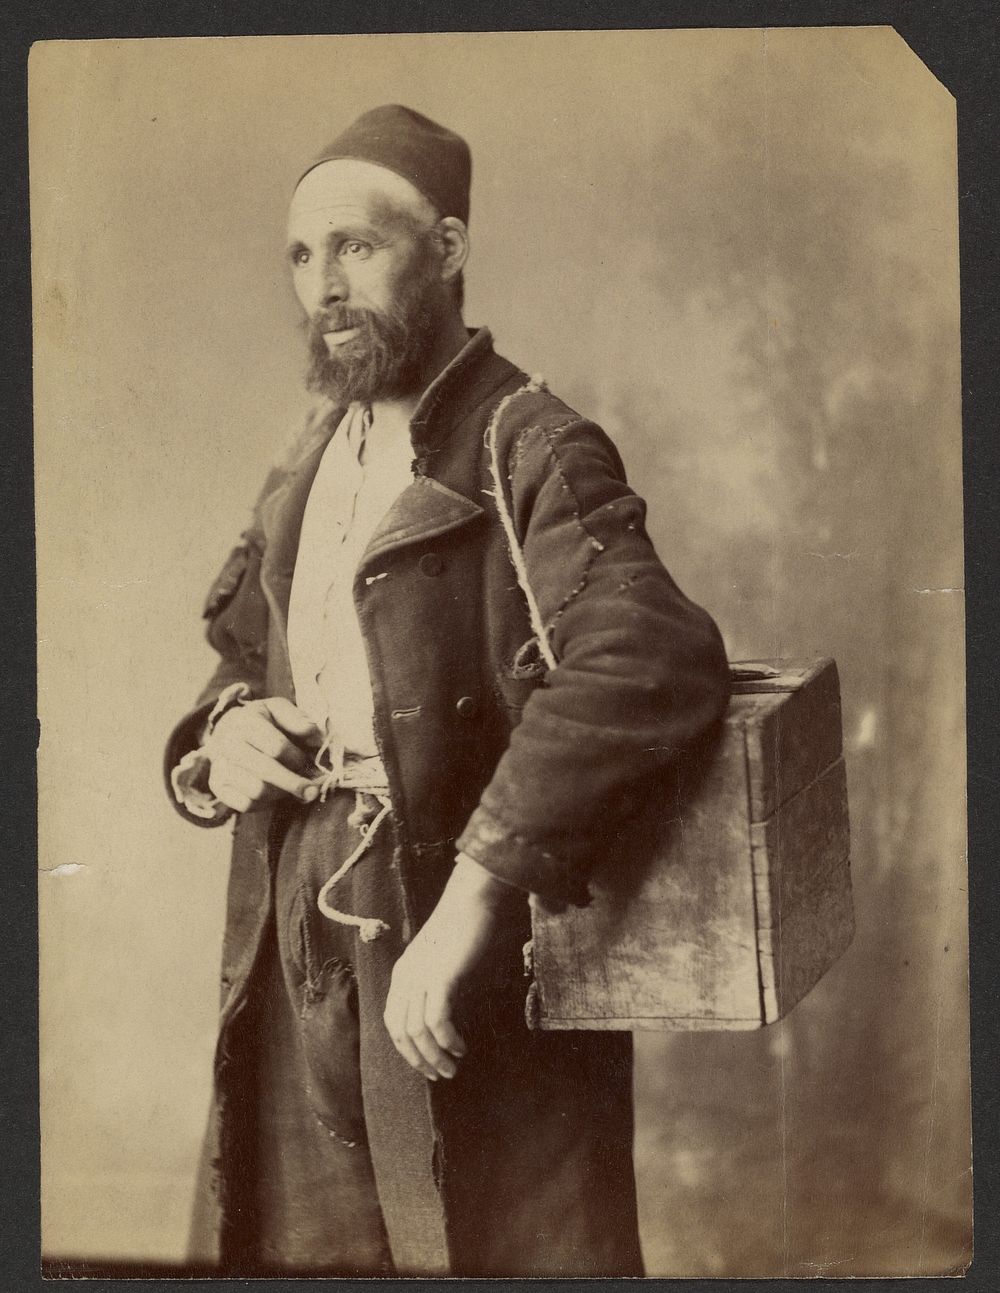 Portrait of man wearing fez